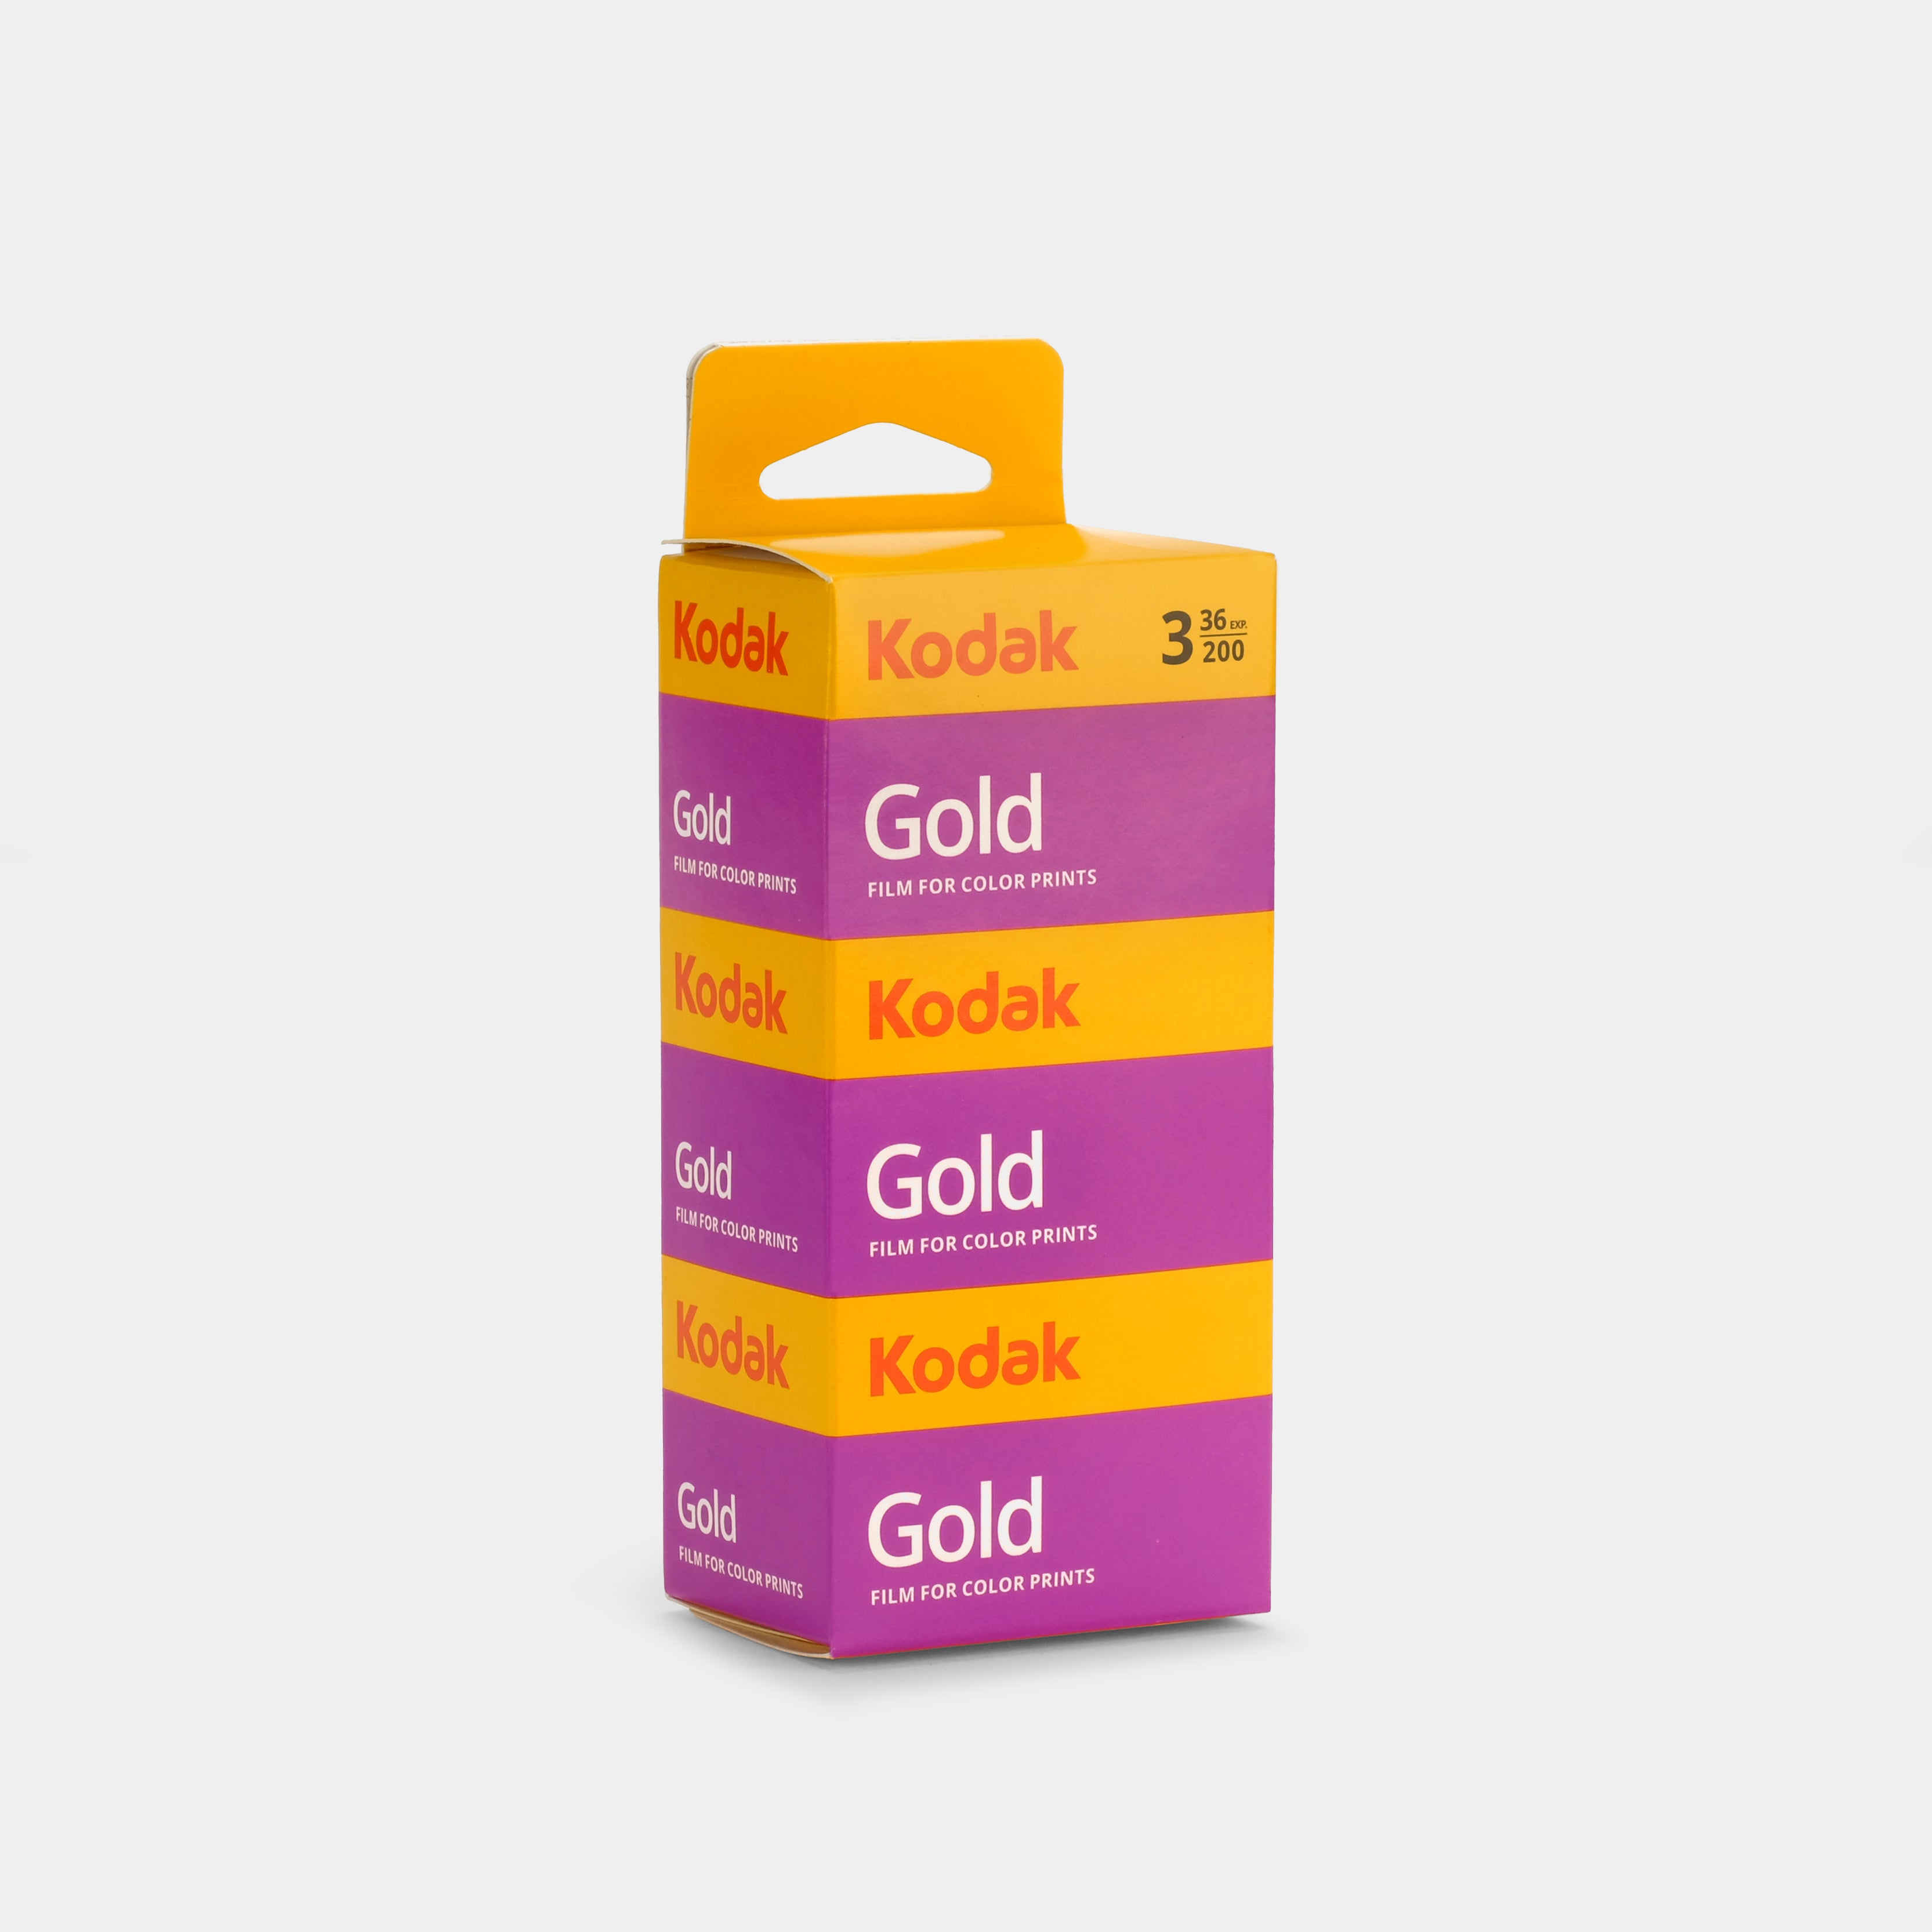 Kodak Gold 200 Color 35mm Film (36 Exposures) - 3 Pack